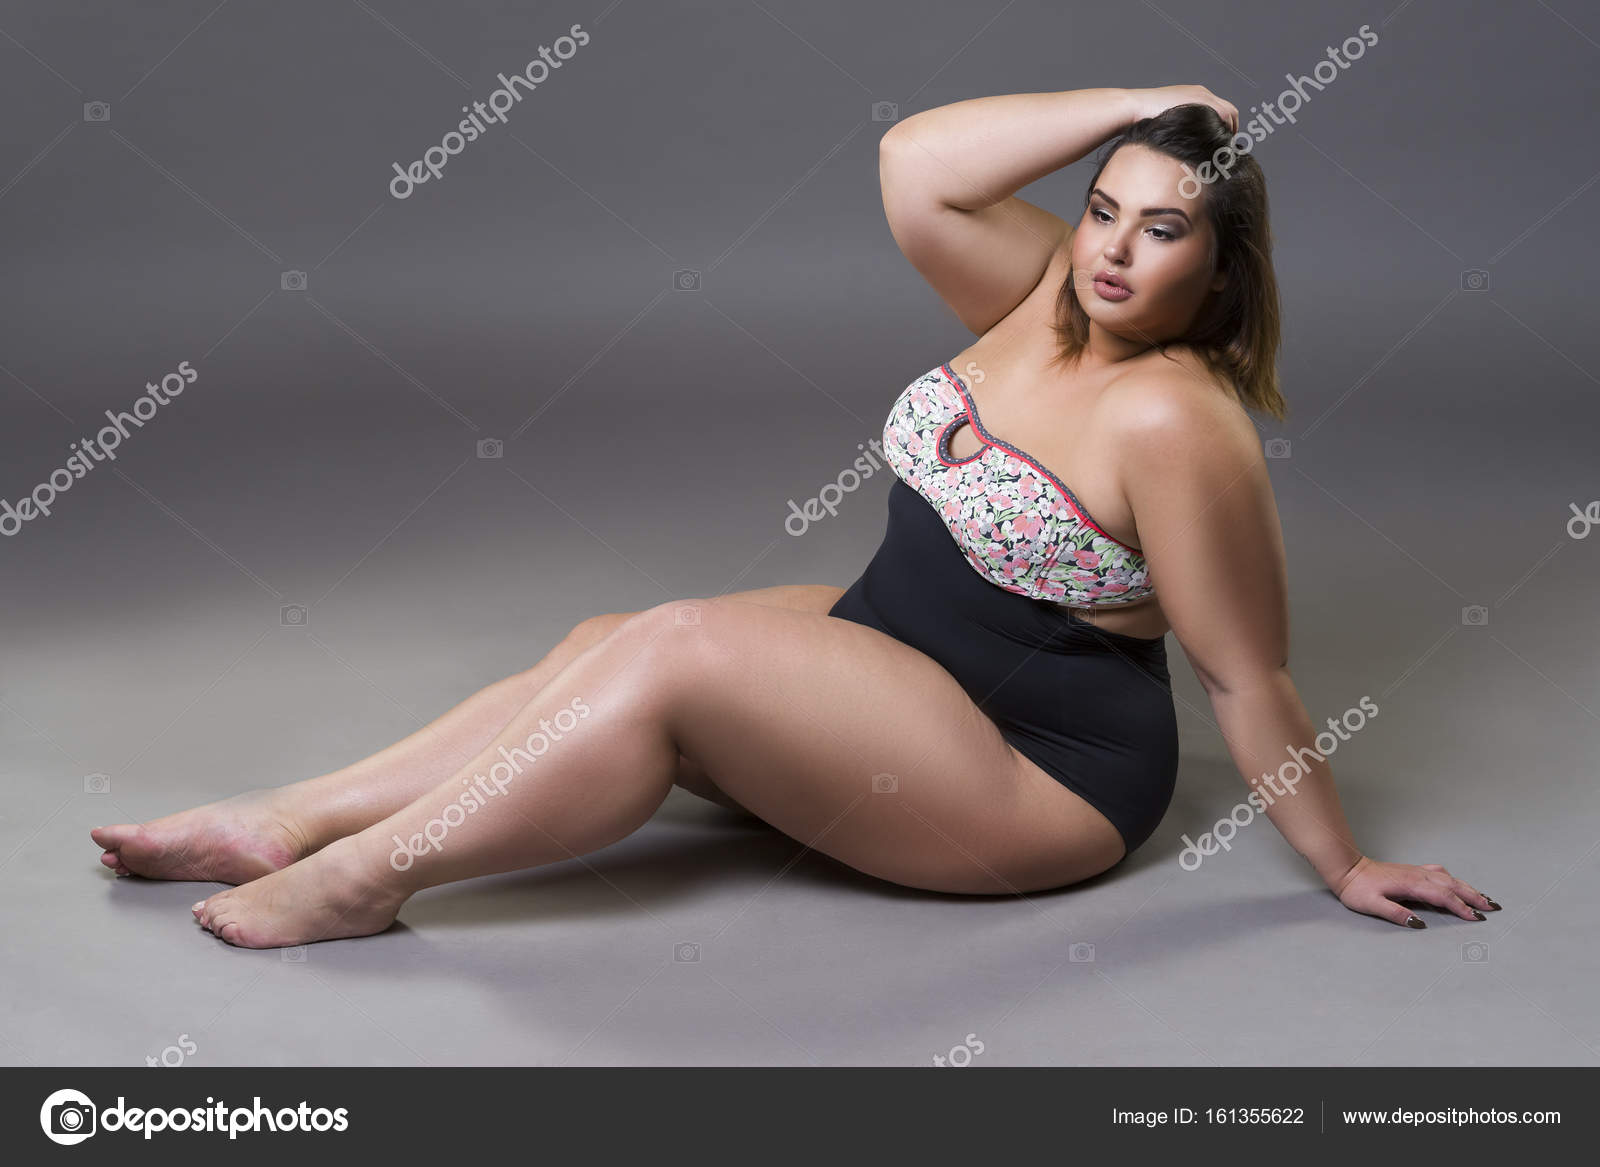 Fat Woman Model 46